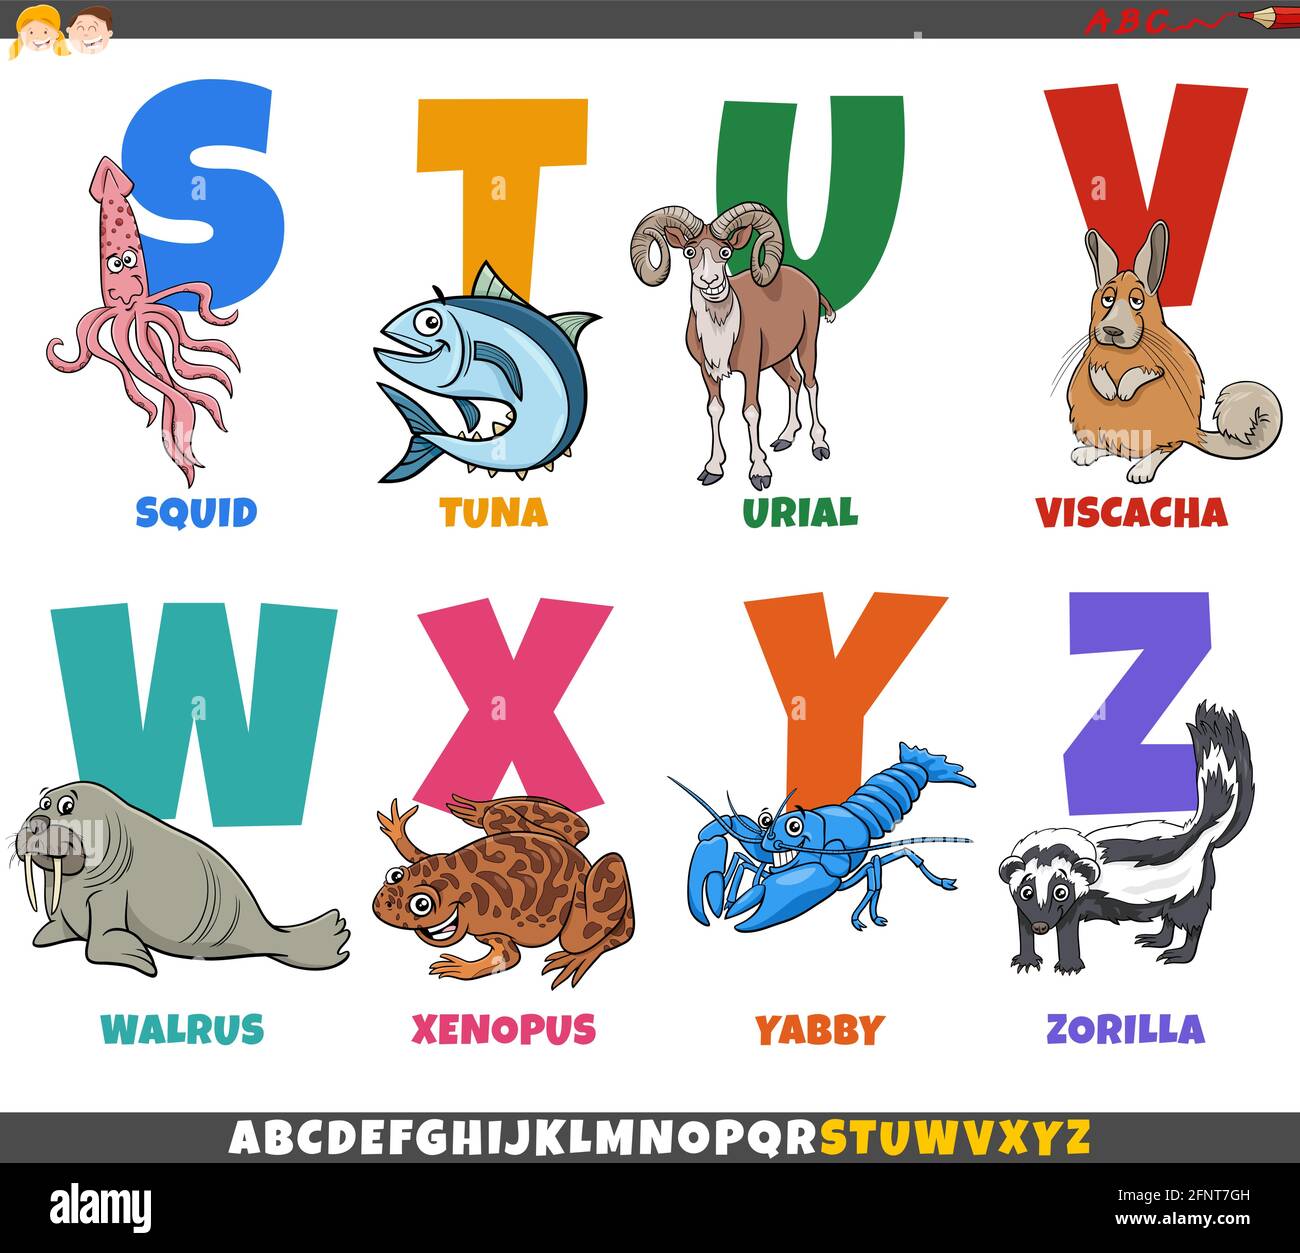 Cartoon-Illustration der pädagogischen bunten Alphabet Satz aus dem Buchstaben S Bis Z mit Comic-Tierfiguren Stock Vektor